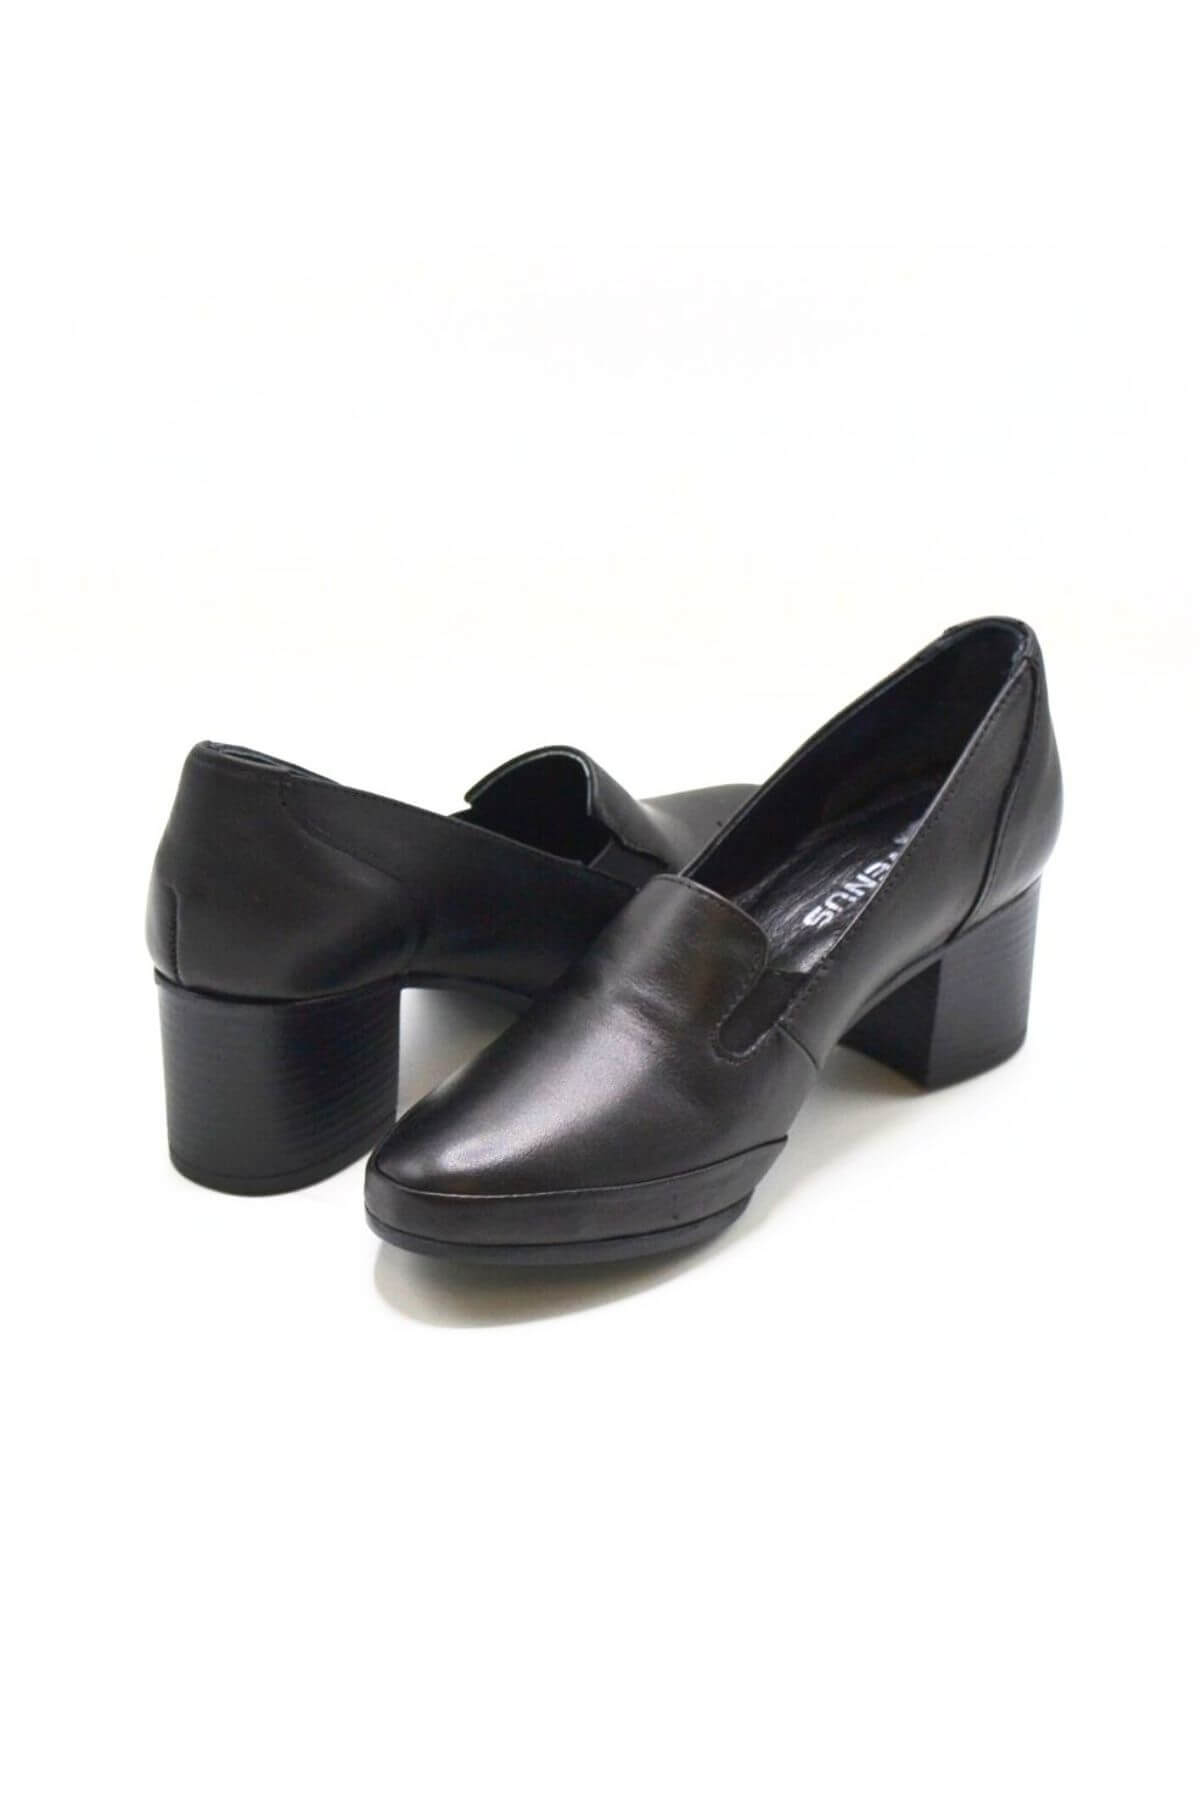 Kadın Topuklu Deri Ayakkabı Siyah 1911902K